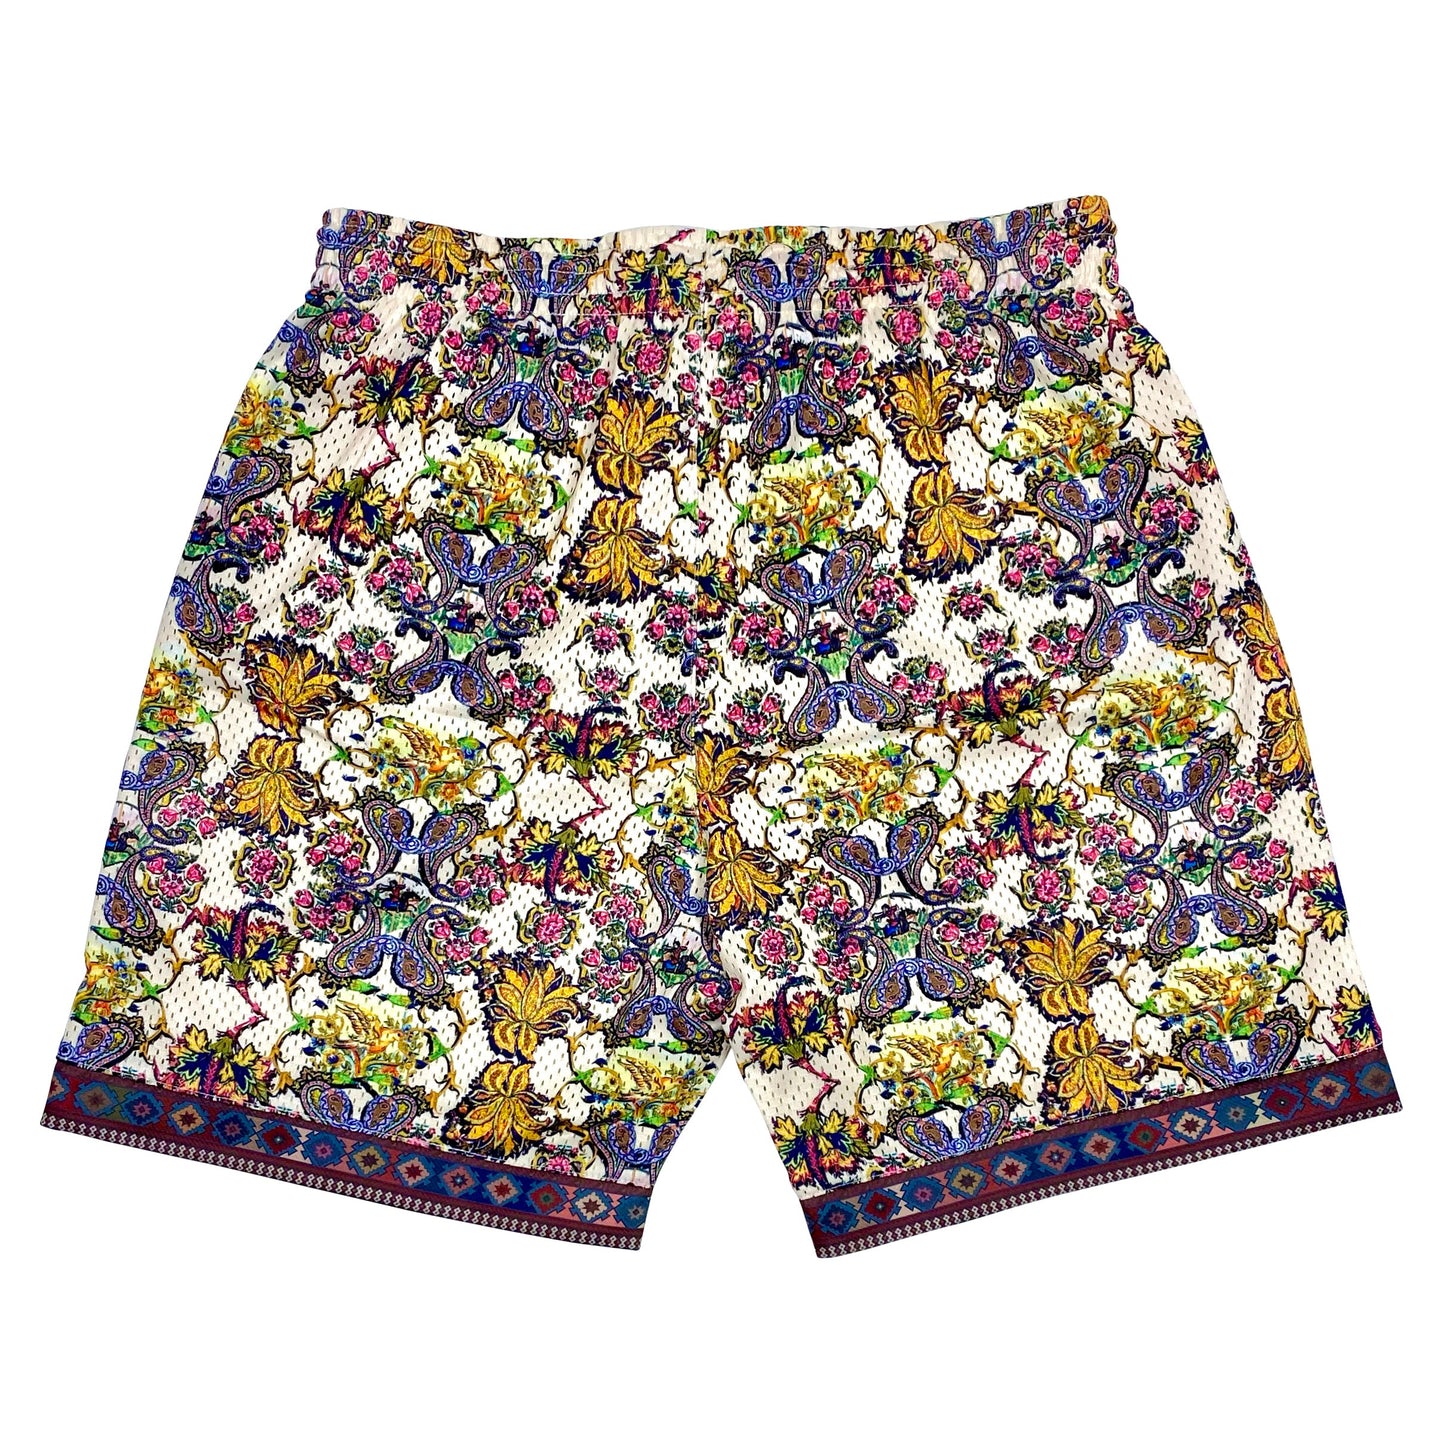 Bled-bledla-Persian Shorts-Iran Clothing-Mesh Shorts-Mosaic Shorts-Iranian Shorts-Los Angeles